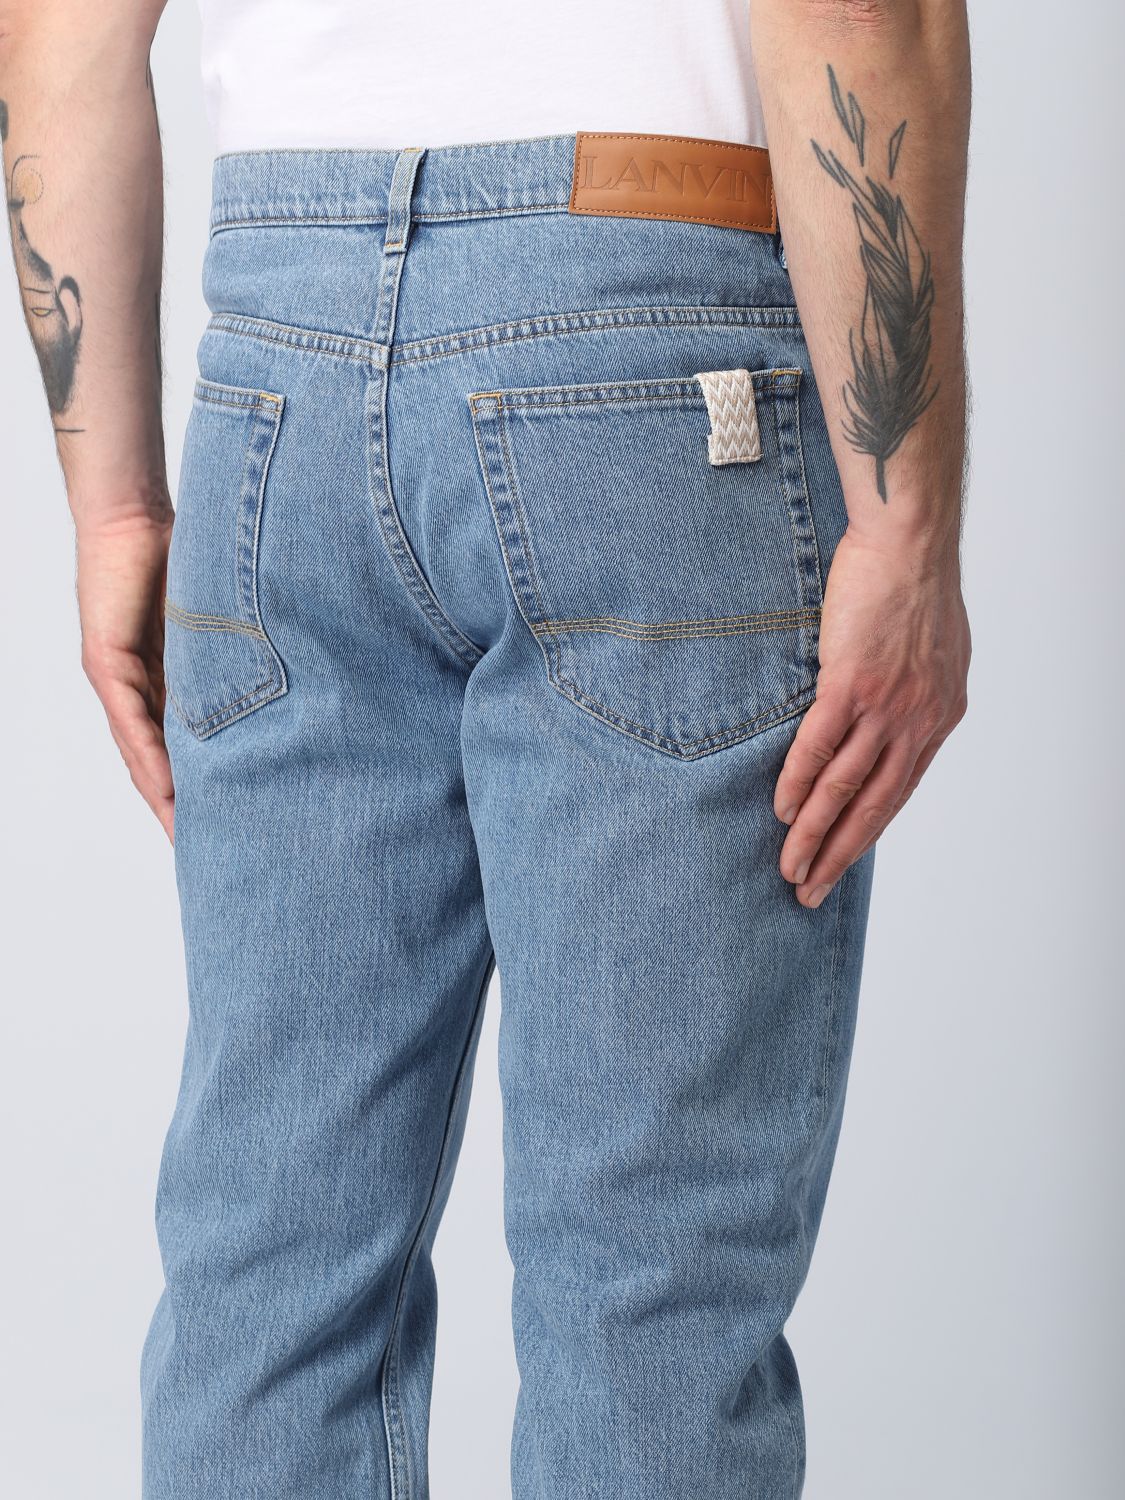 LANVIN: jeans for man - Blue | Lanvin jeans RMTR0257D054P23 online on ...